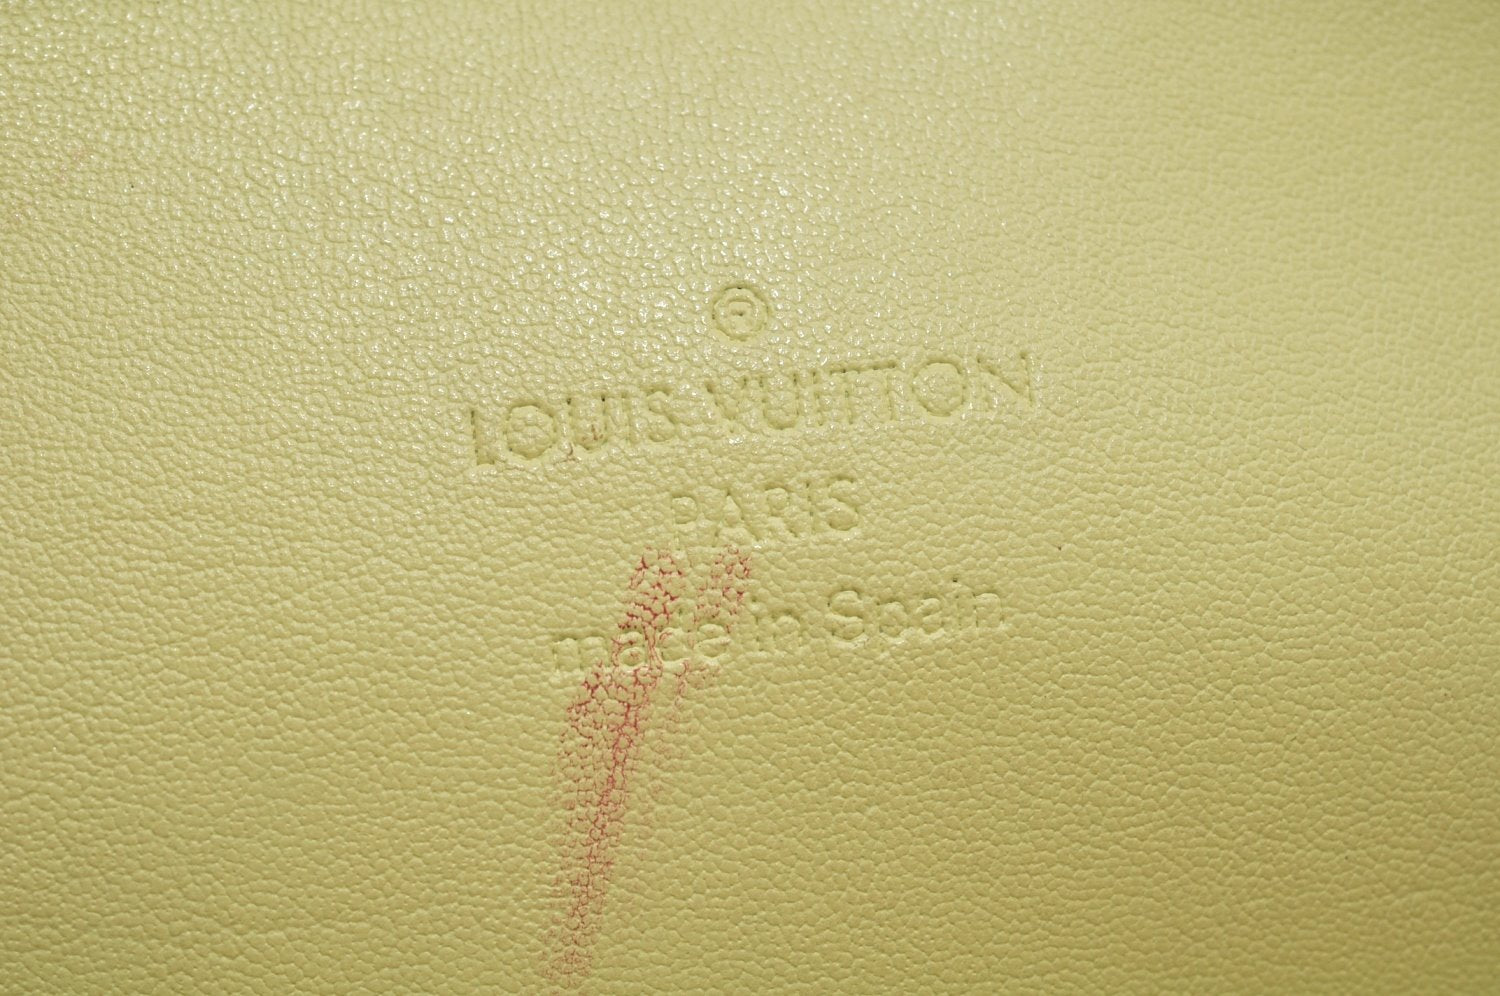 Authentic Louis Vuitton Vernis Columbus Shoulder Tote Bag Yellow M91047 LV L0017